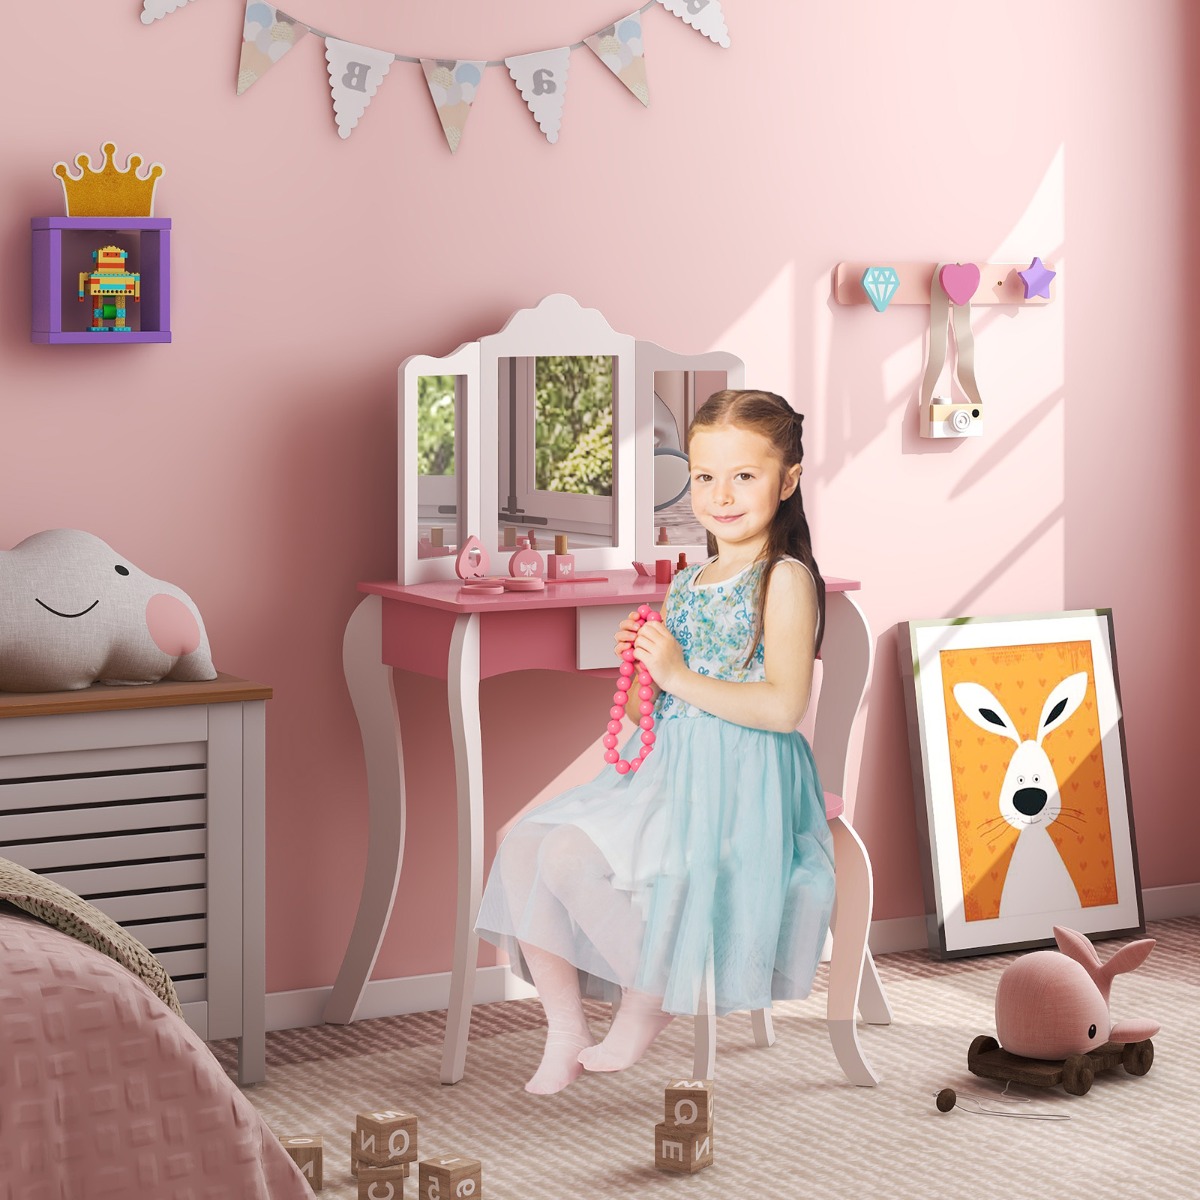 Costway 2 In 1 Kinderkaptafel met Krukje & Afneembare 3-Delige Spiegel Make-Up Tafel met Lade voor Kinderen Vanaf 3 Jaar Wit + Roze